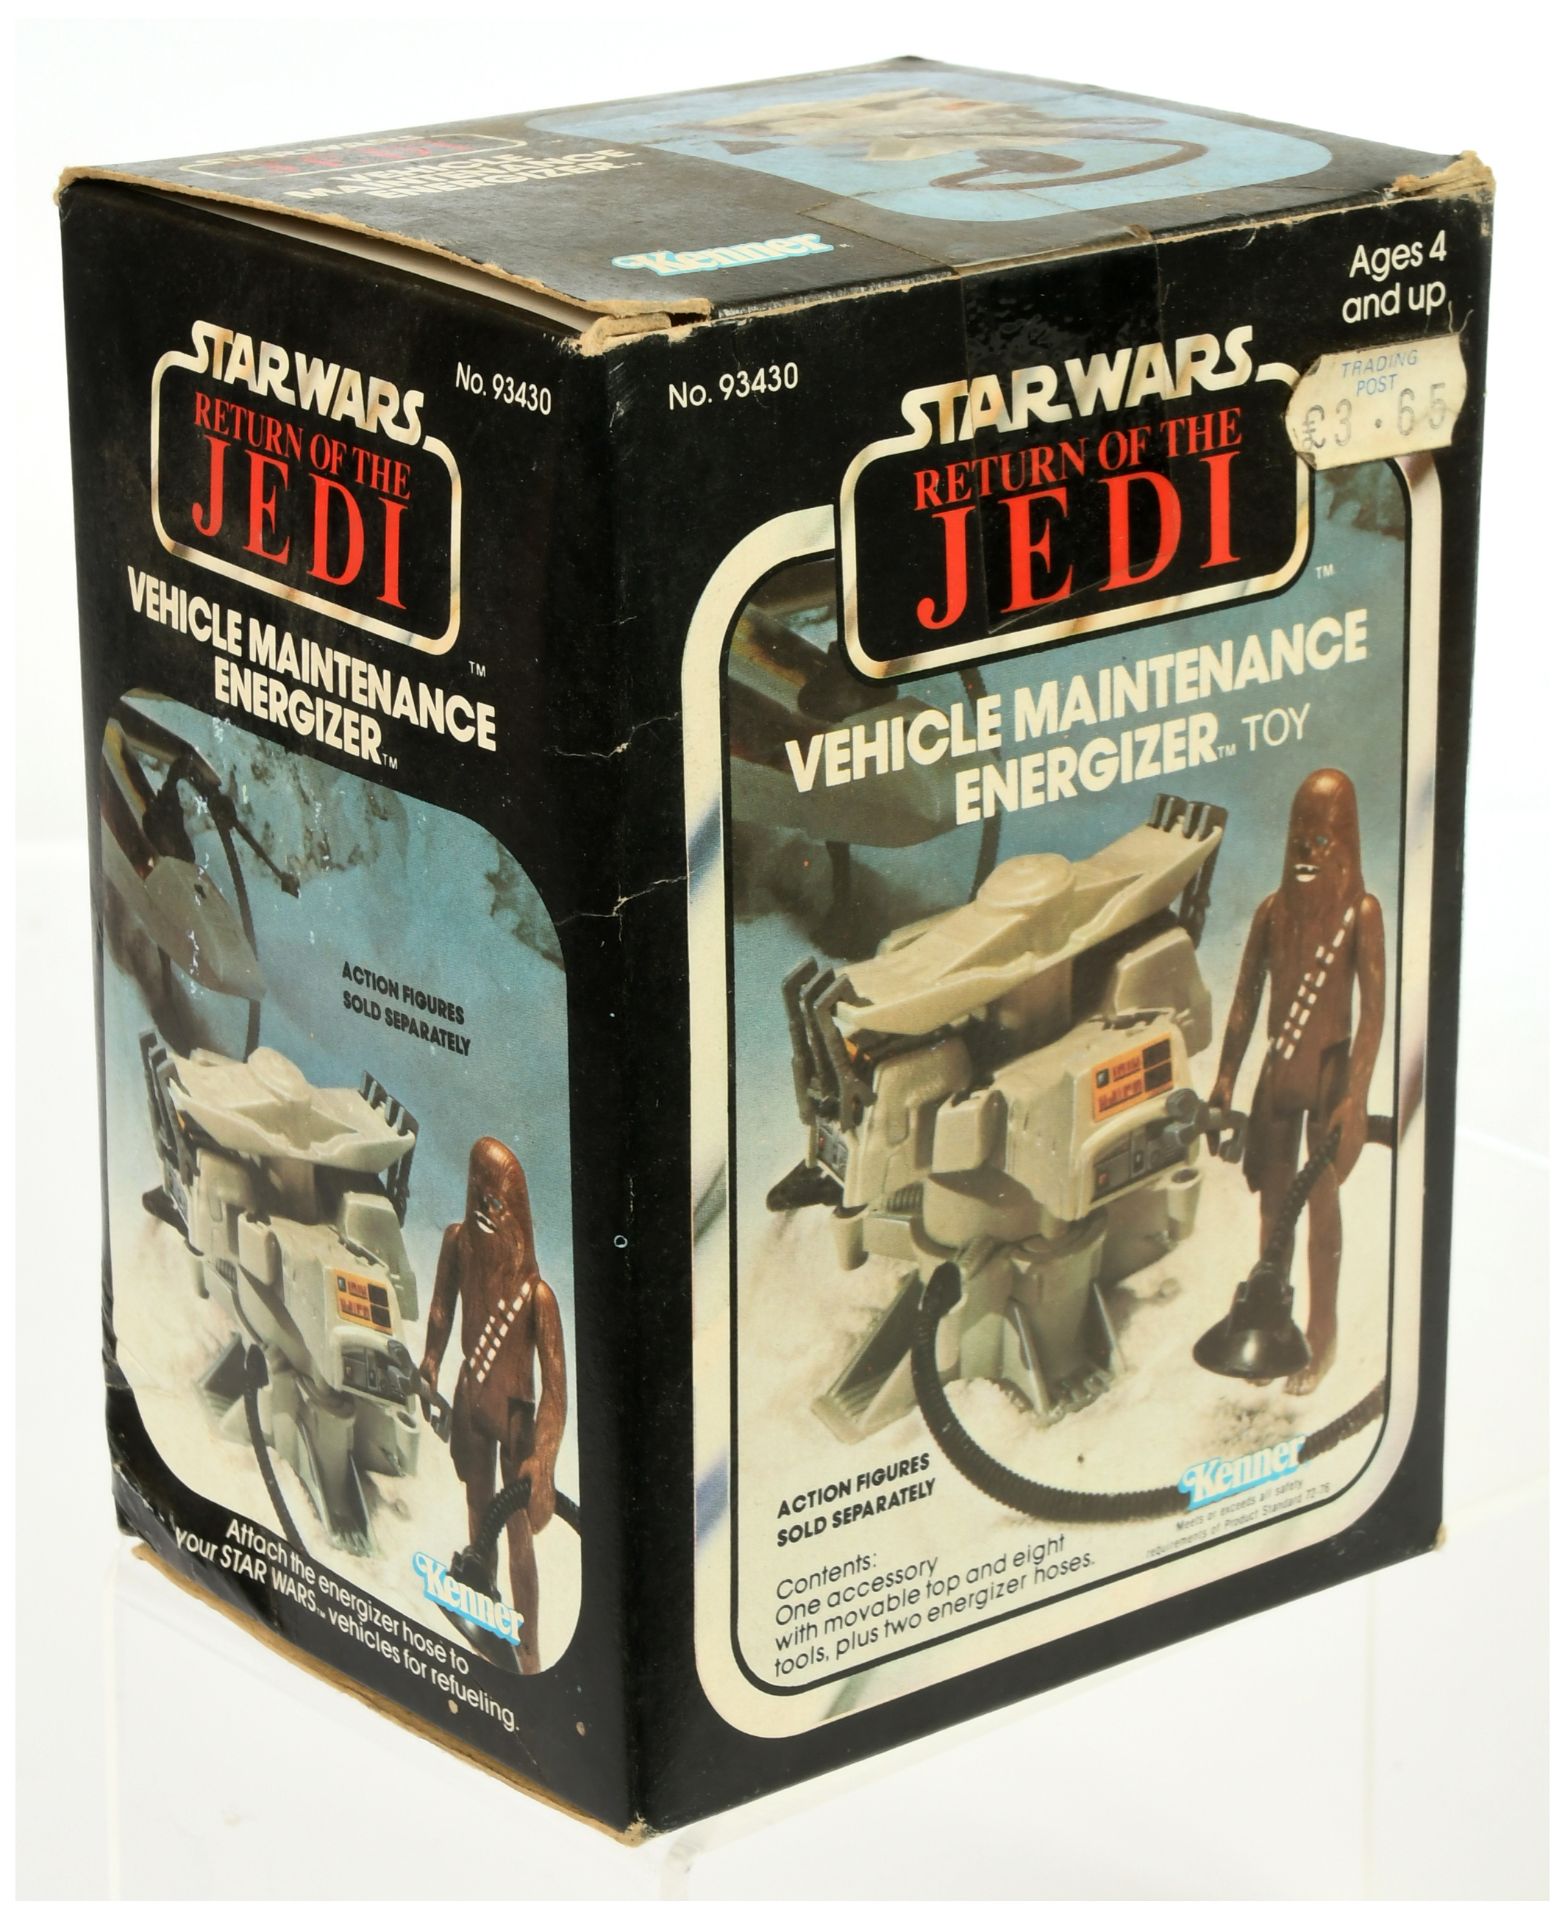 Kenner Star Wars vintage Return of the Jedi Vehicle Maintenance Energizer